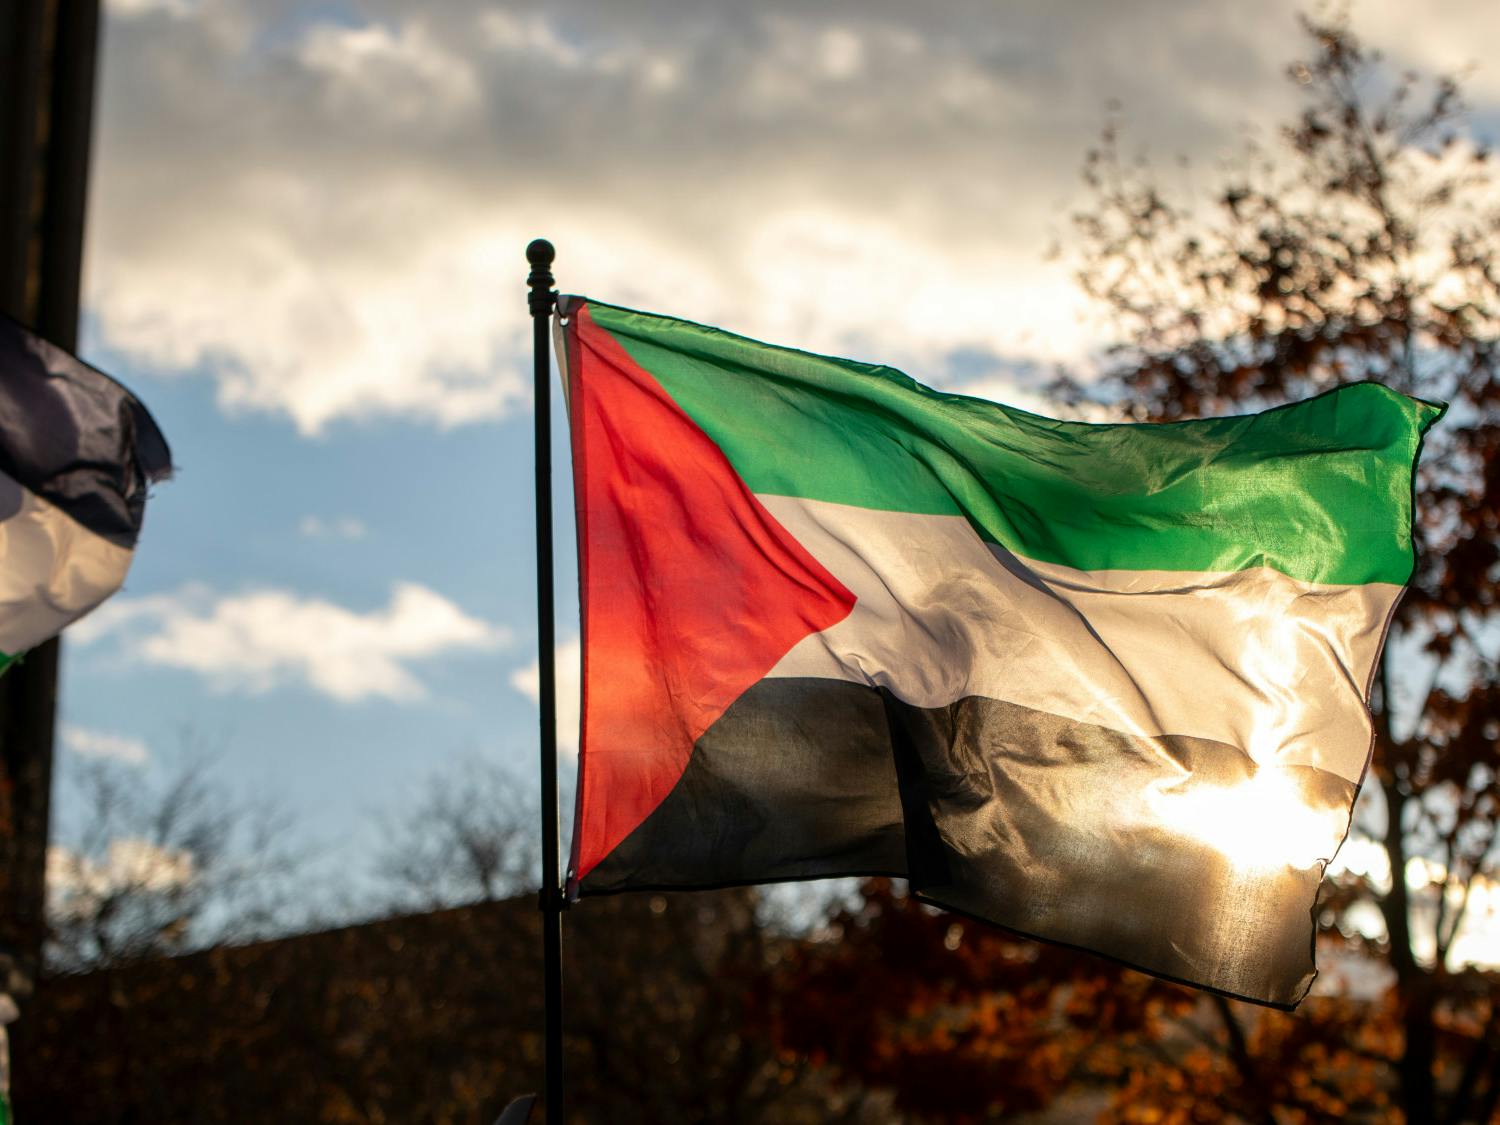 A Palestinian flag flies over Niagara Square.